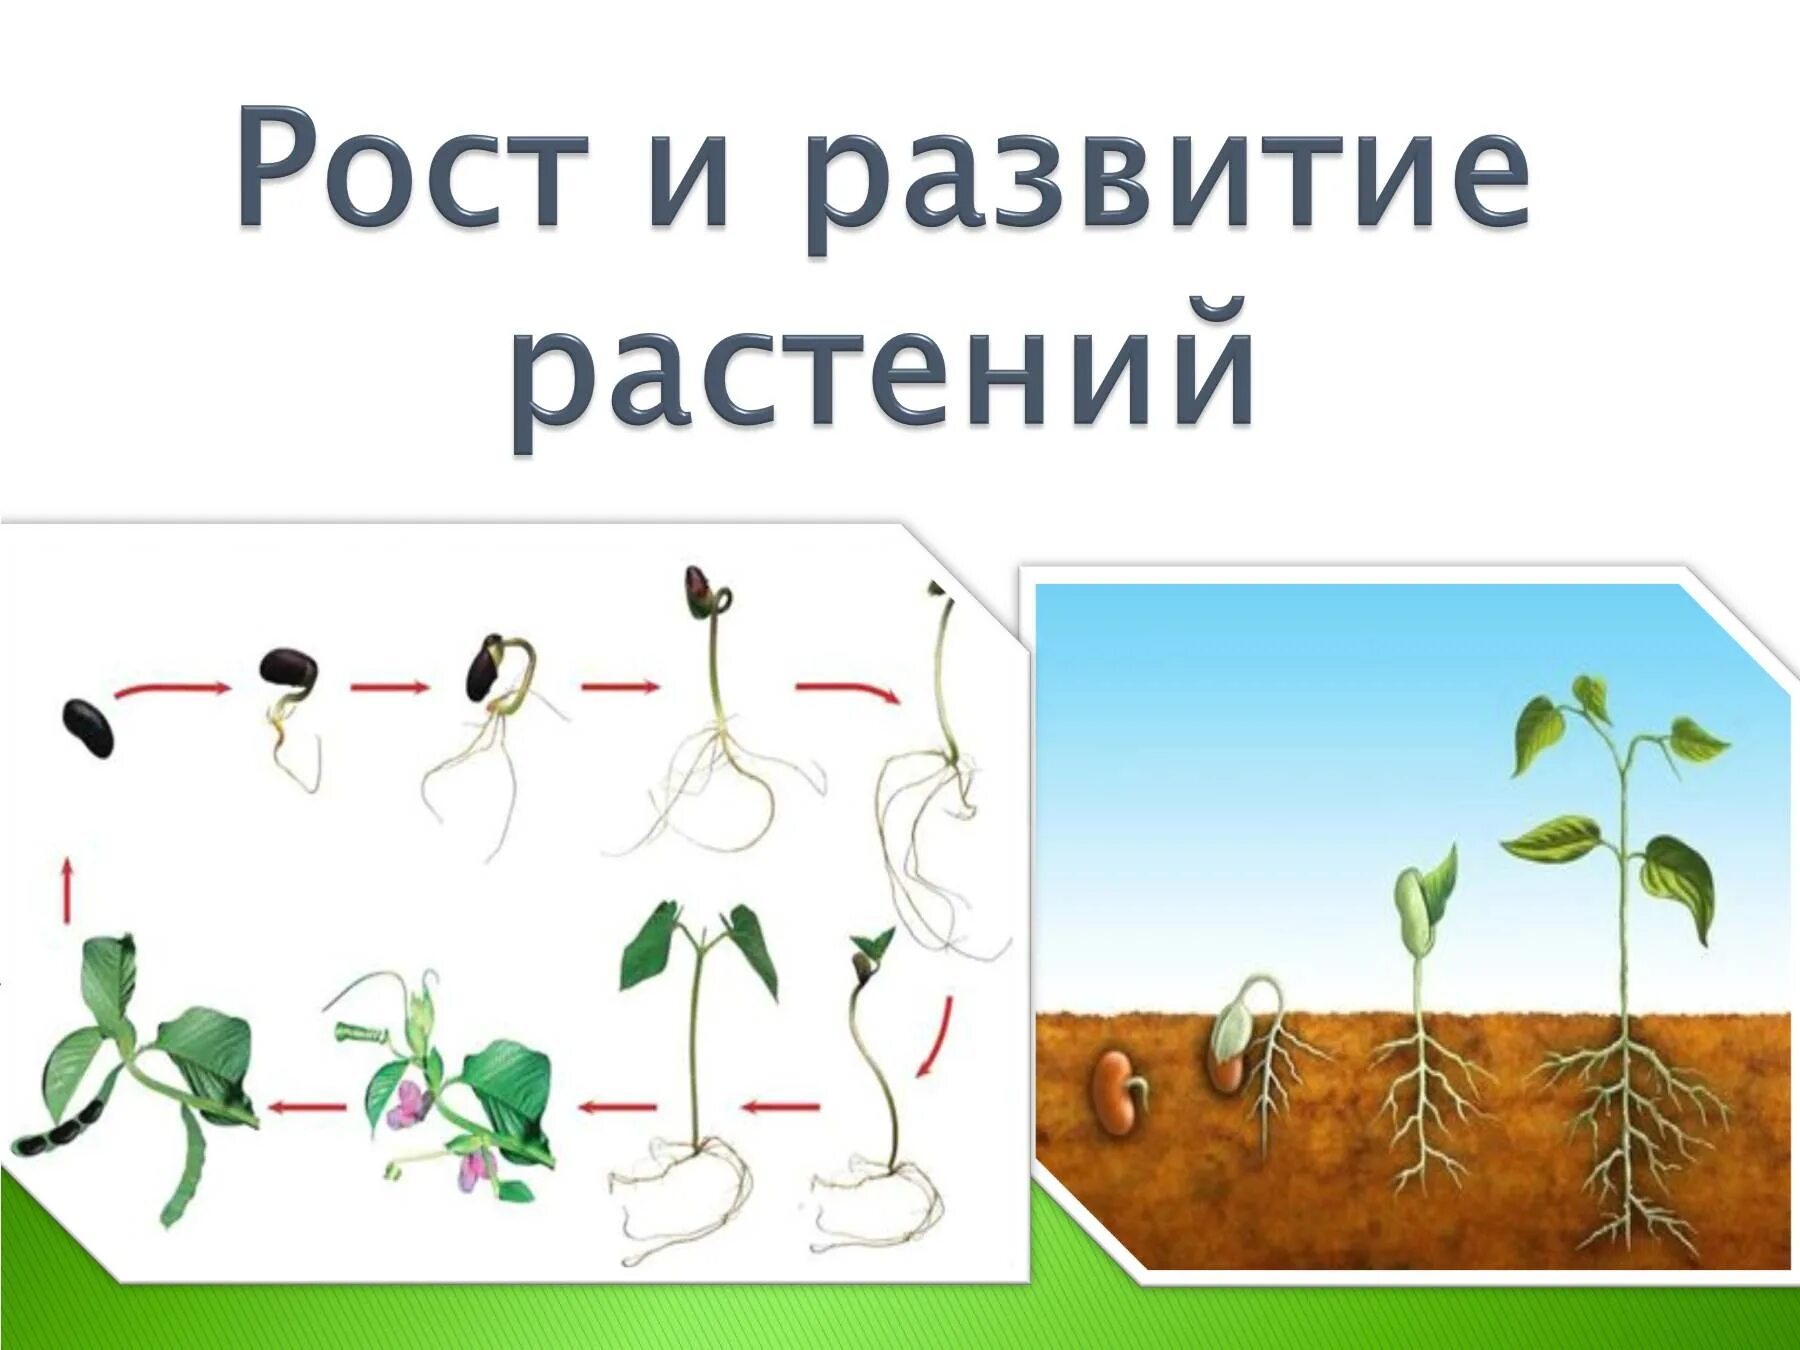 Этапы оста. Рост и развитие растений. Ьос т и развитие растений. Этапы роста цветка. Схема роста растения.